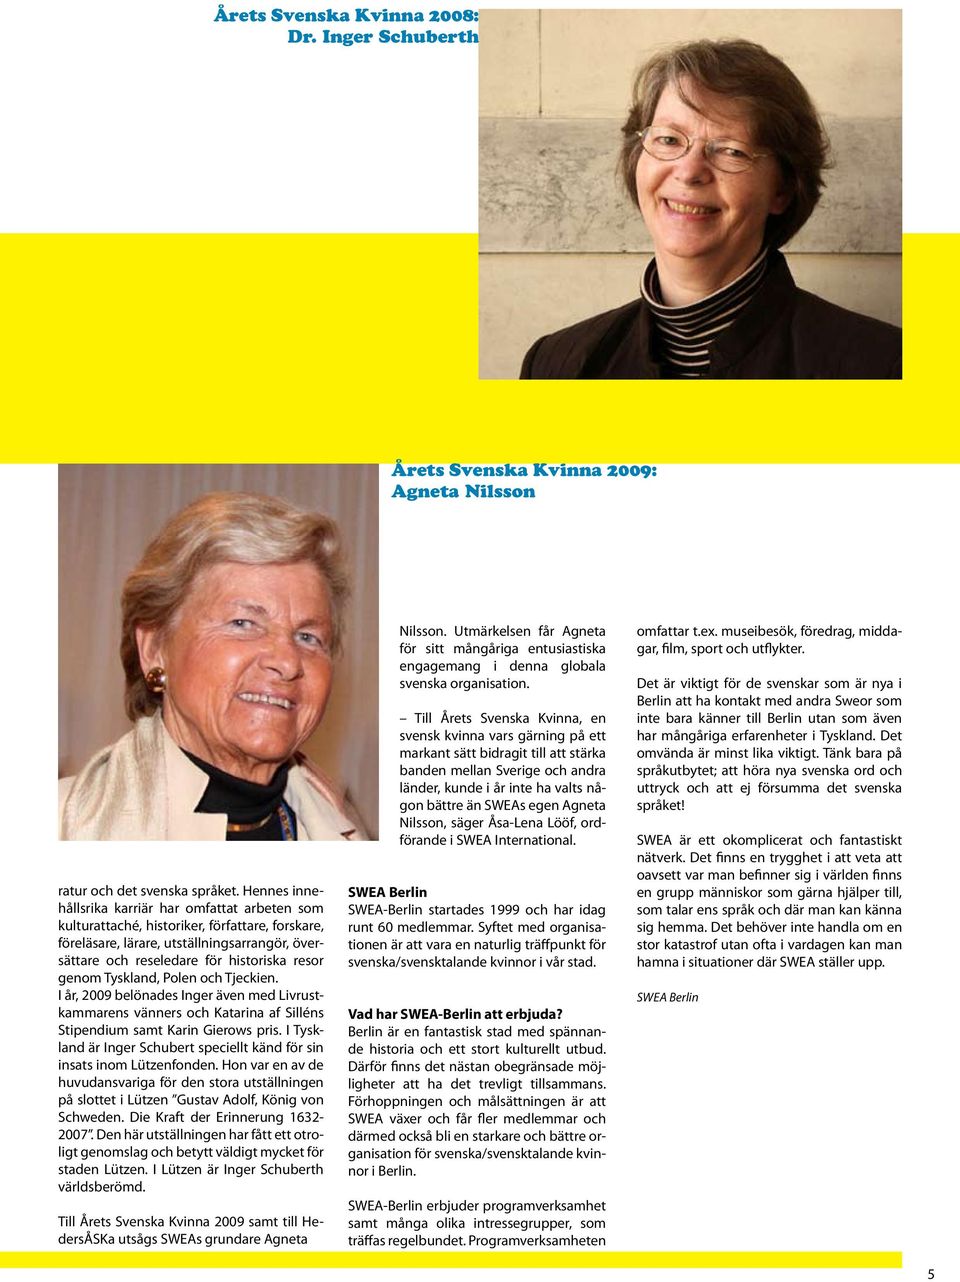 Tyskland, Polen och Tjeckien. I år, 2009 belönades Inger även med Livrustkammarens vänners och Katarina af Silléns Stipendium samt Karin Gierows pris.